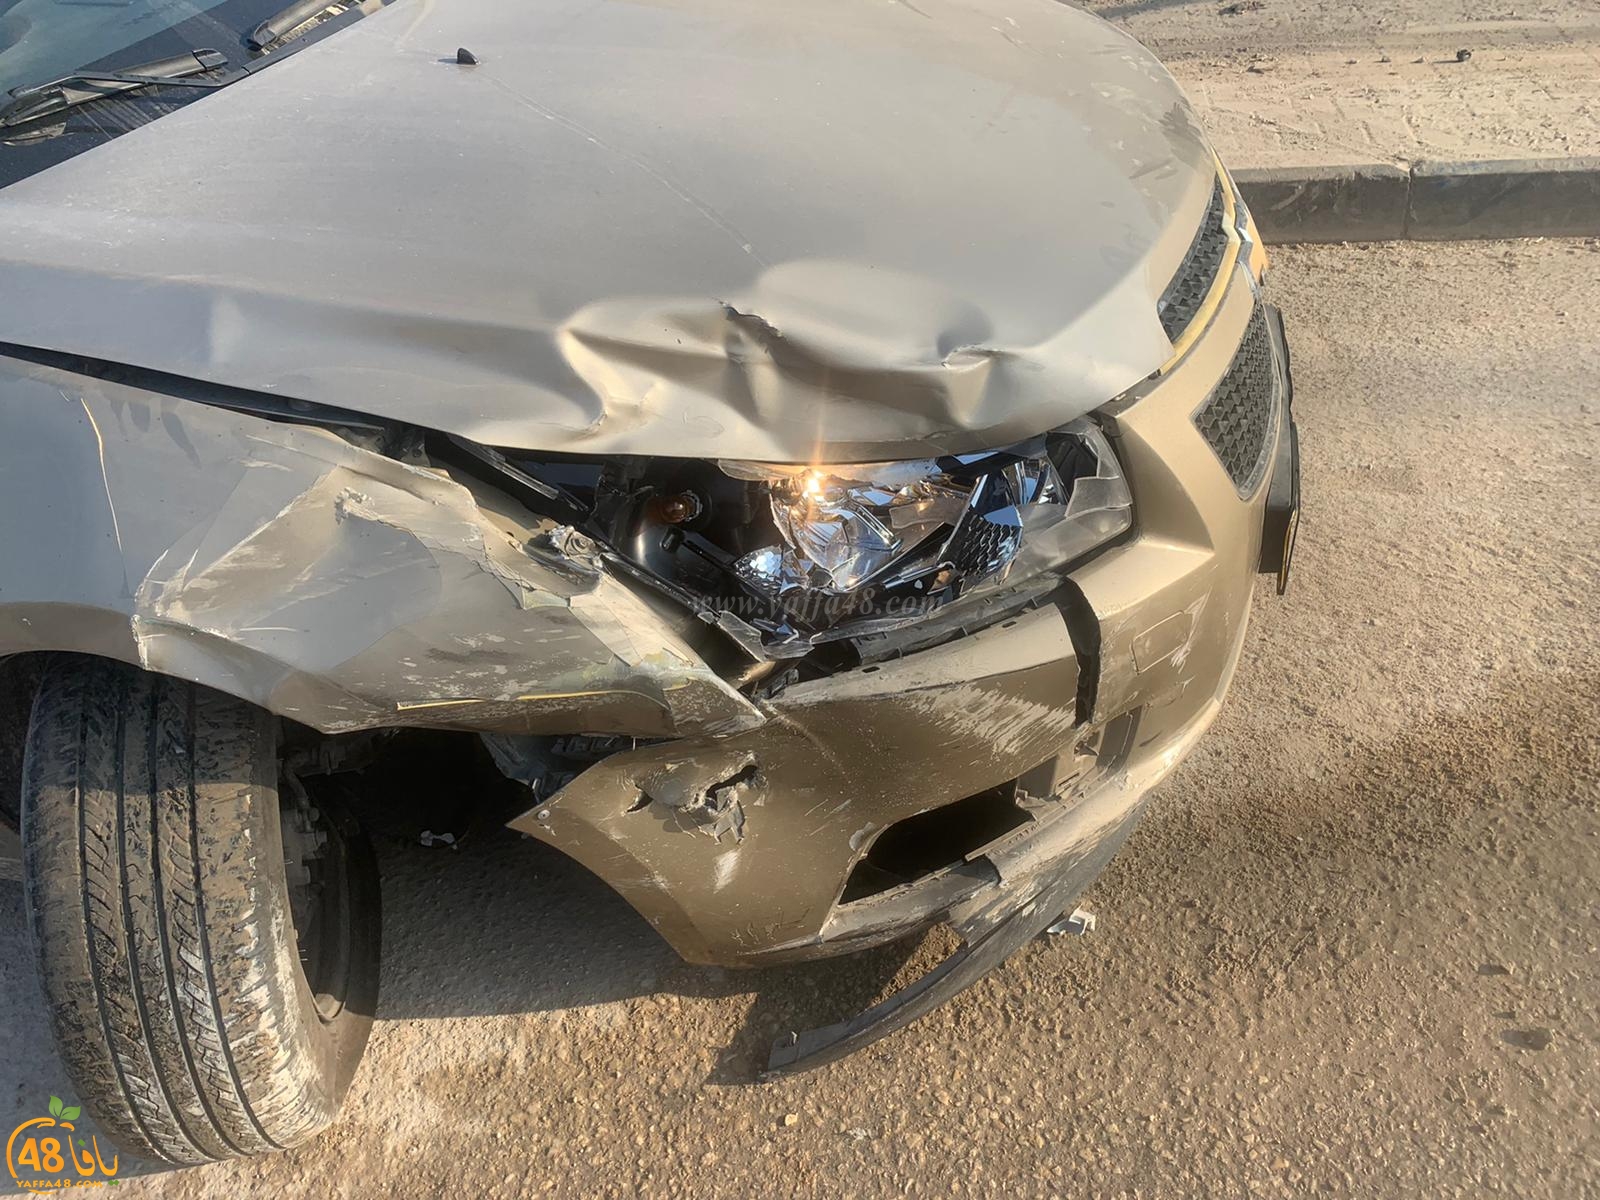  اصابة طفيفة لسائق مركبة بحادث طرق في مدينة اللد